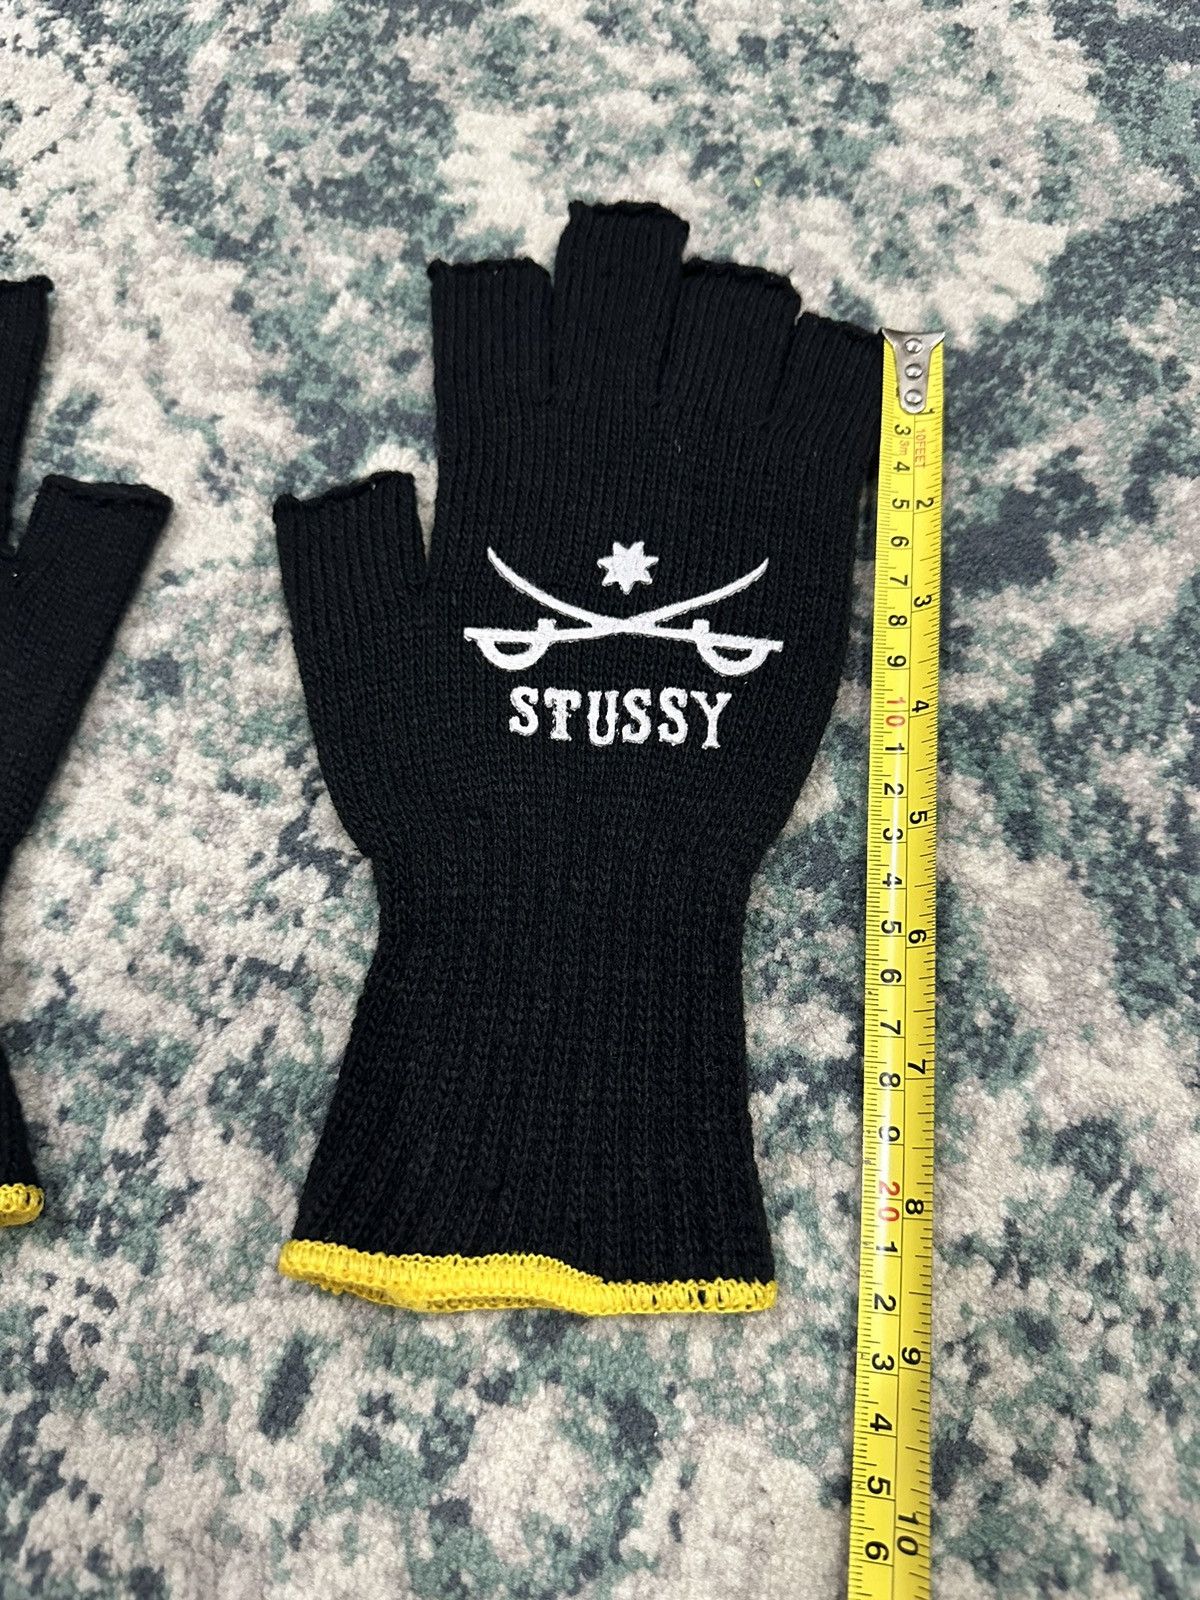 Stussy Sword Fingerless Gloves Black Yellow (Japan Only) - 7